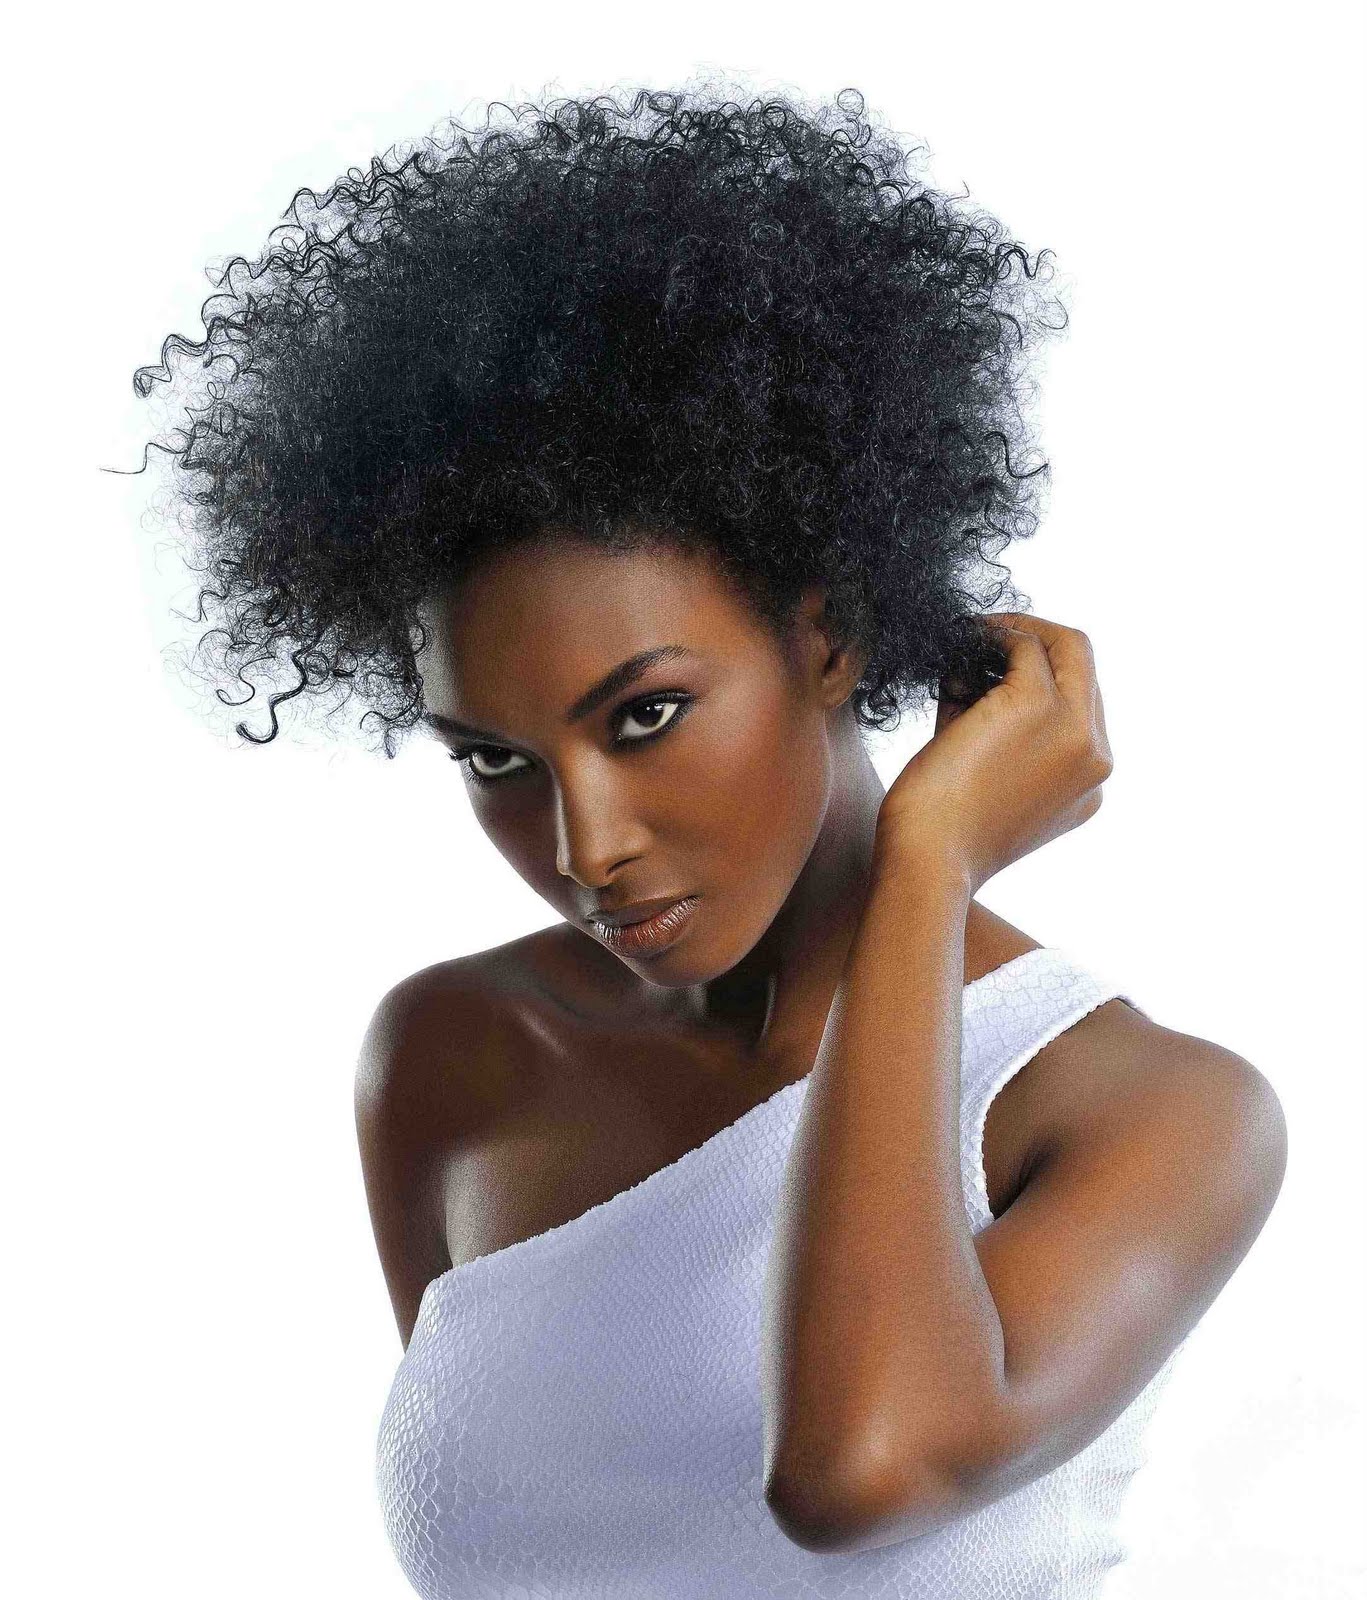 http://4.bp.blogspot.com/-KDiYnMwWwHg/TgB-RPkuxEI/AAAAAAAACXE/EETG4PD_Qx0/s1600/Curly-Hairstyle-For-Black-Women-2011-.jpg